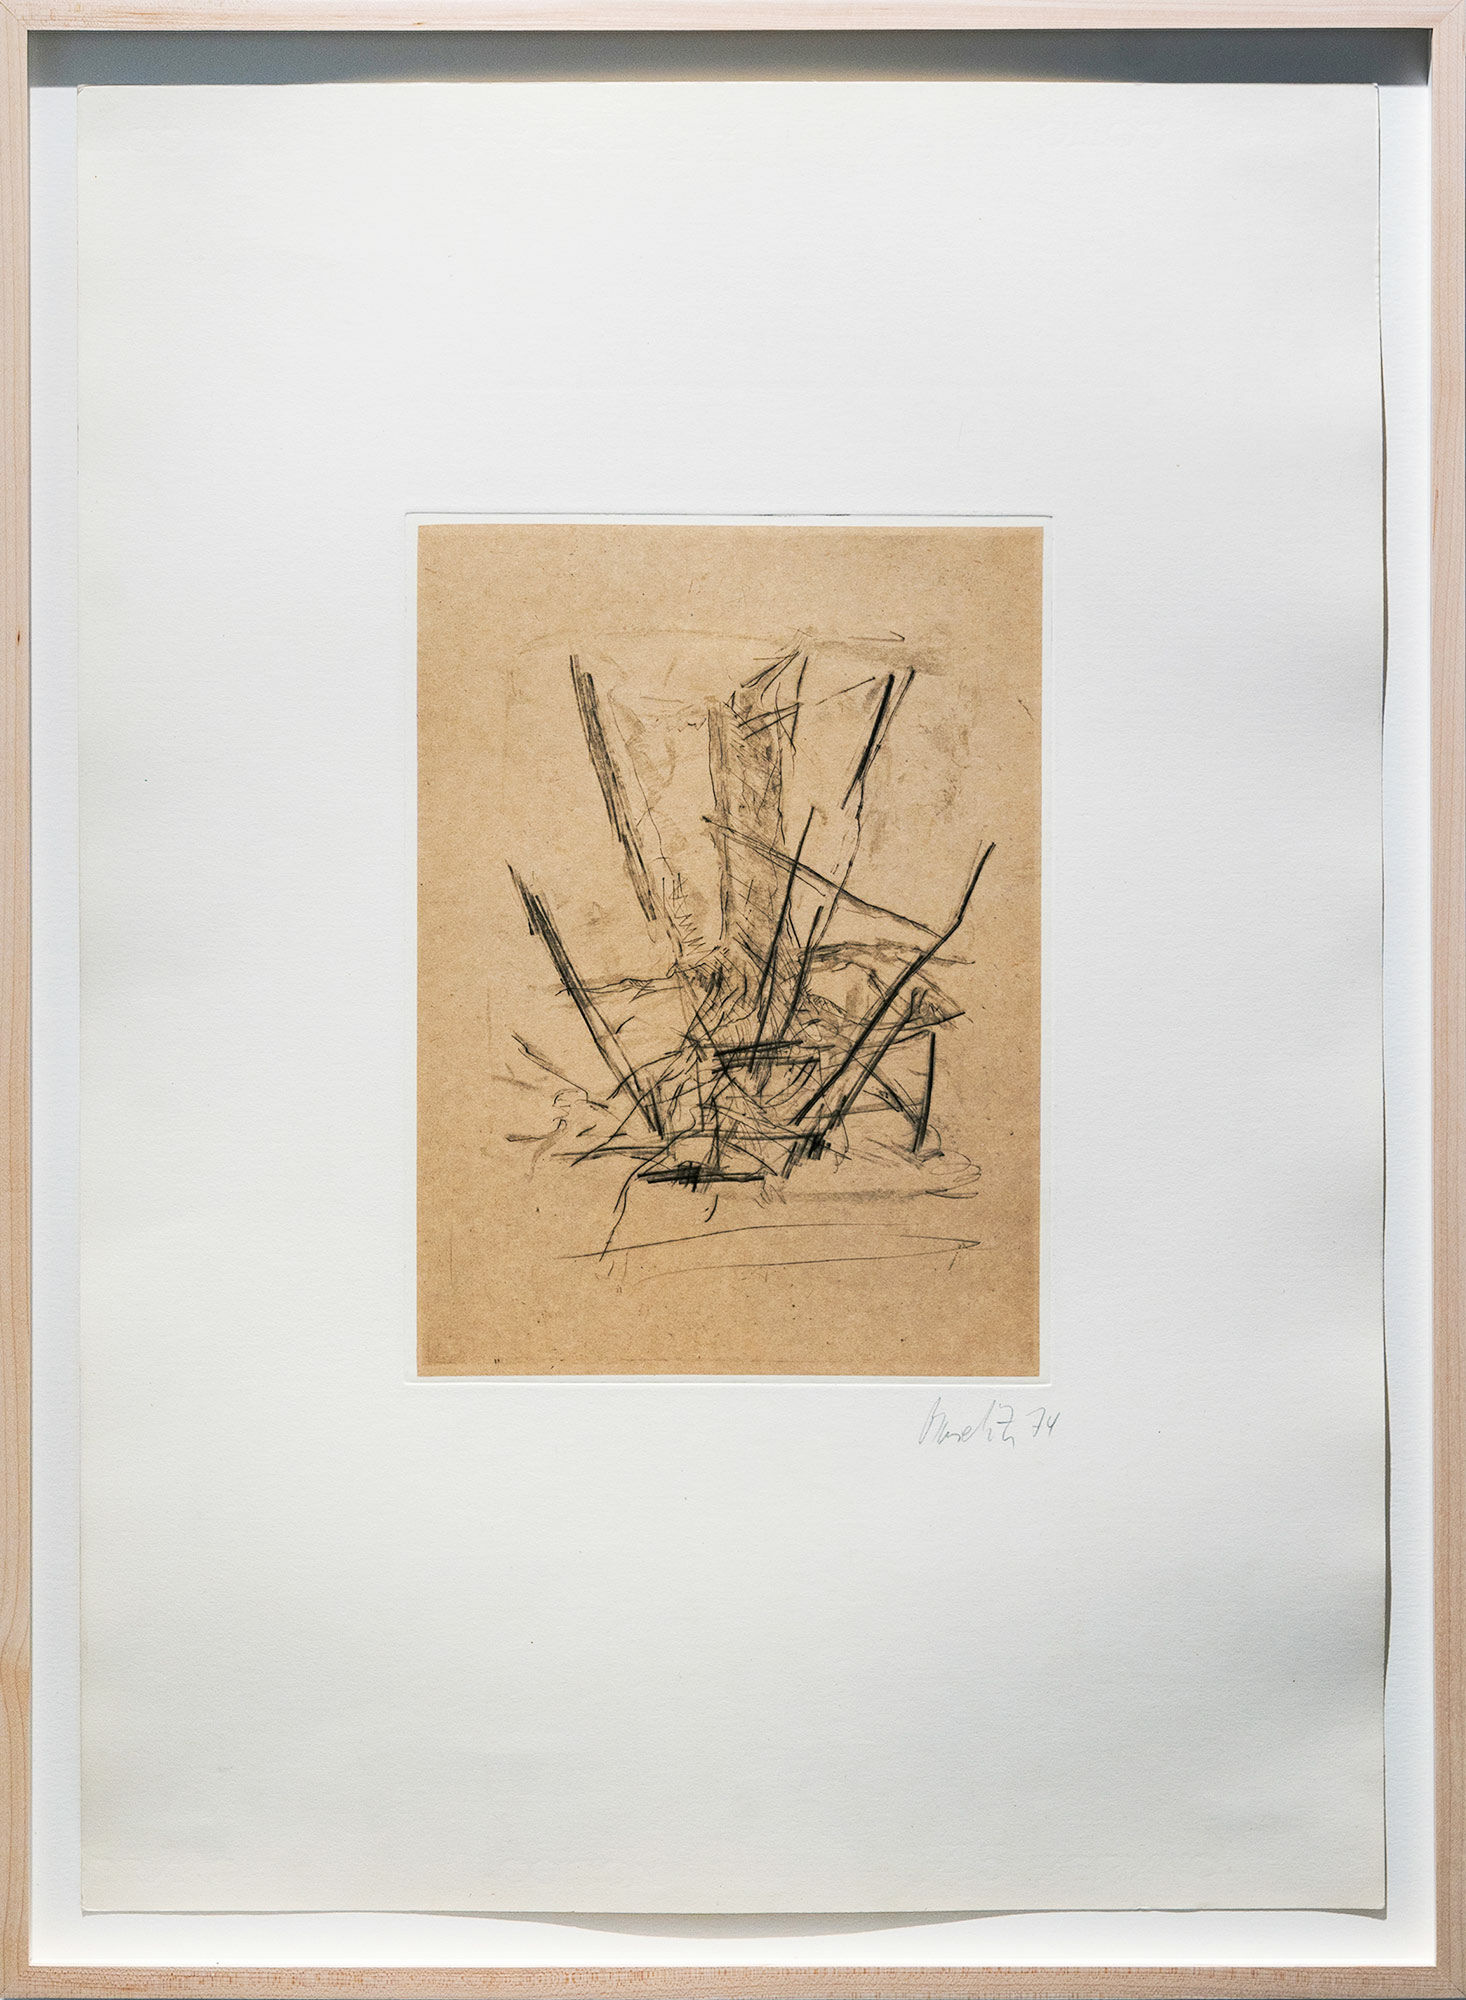 Bild "Ohne Titel Blatt 17 der Mappe Bäume" (1974/75) von Georg Baselitz